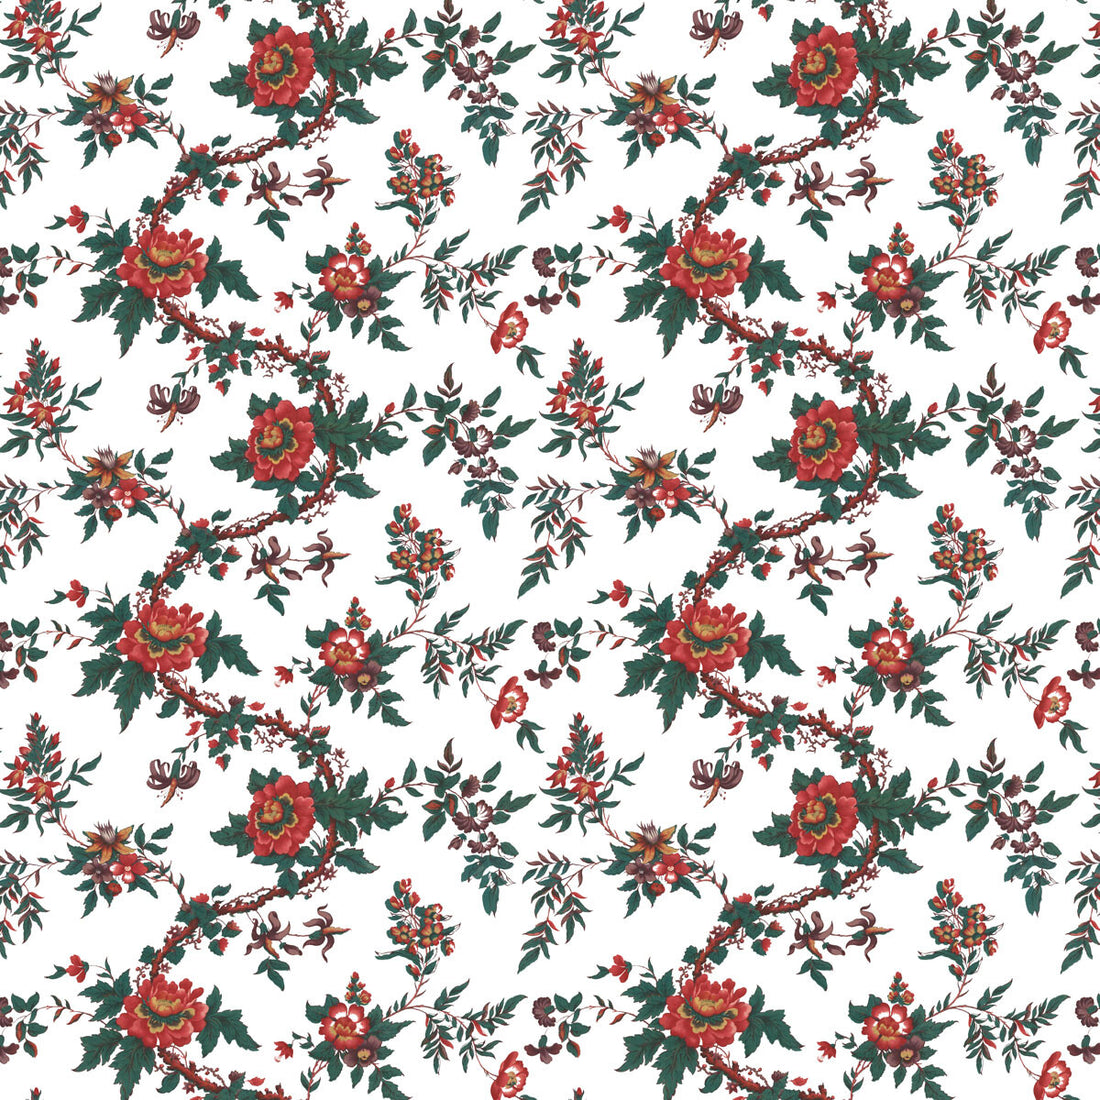 Sarita fabric in rojo color - pattern LCT1069.001.0 - by Gaston y Daniela in the Lorenzo Castillo VI collection